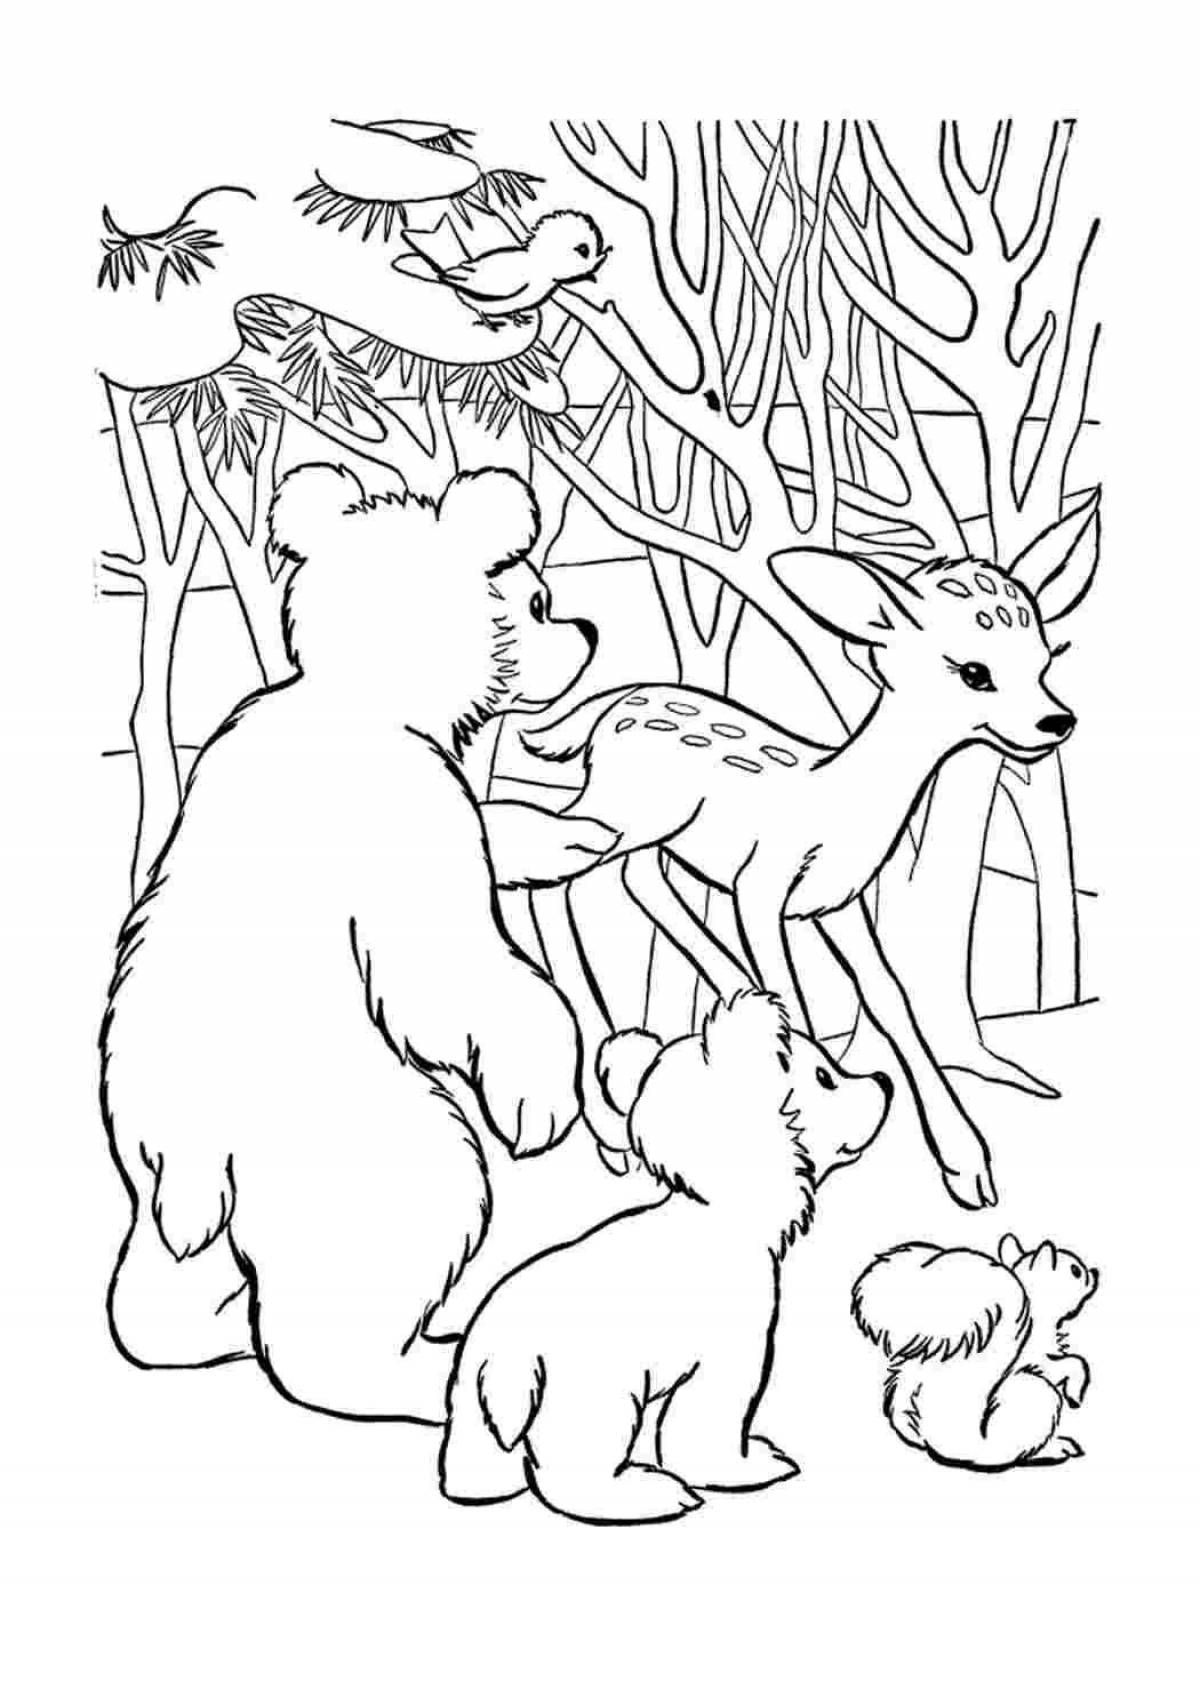 Цветная яркая страница раскраски лесных животных для детей 5-6 лет